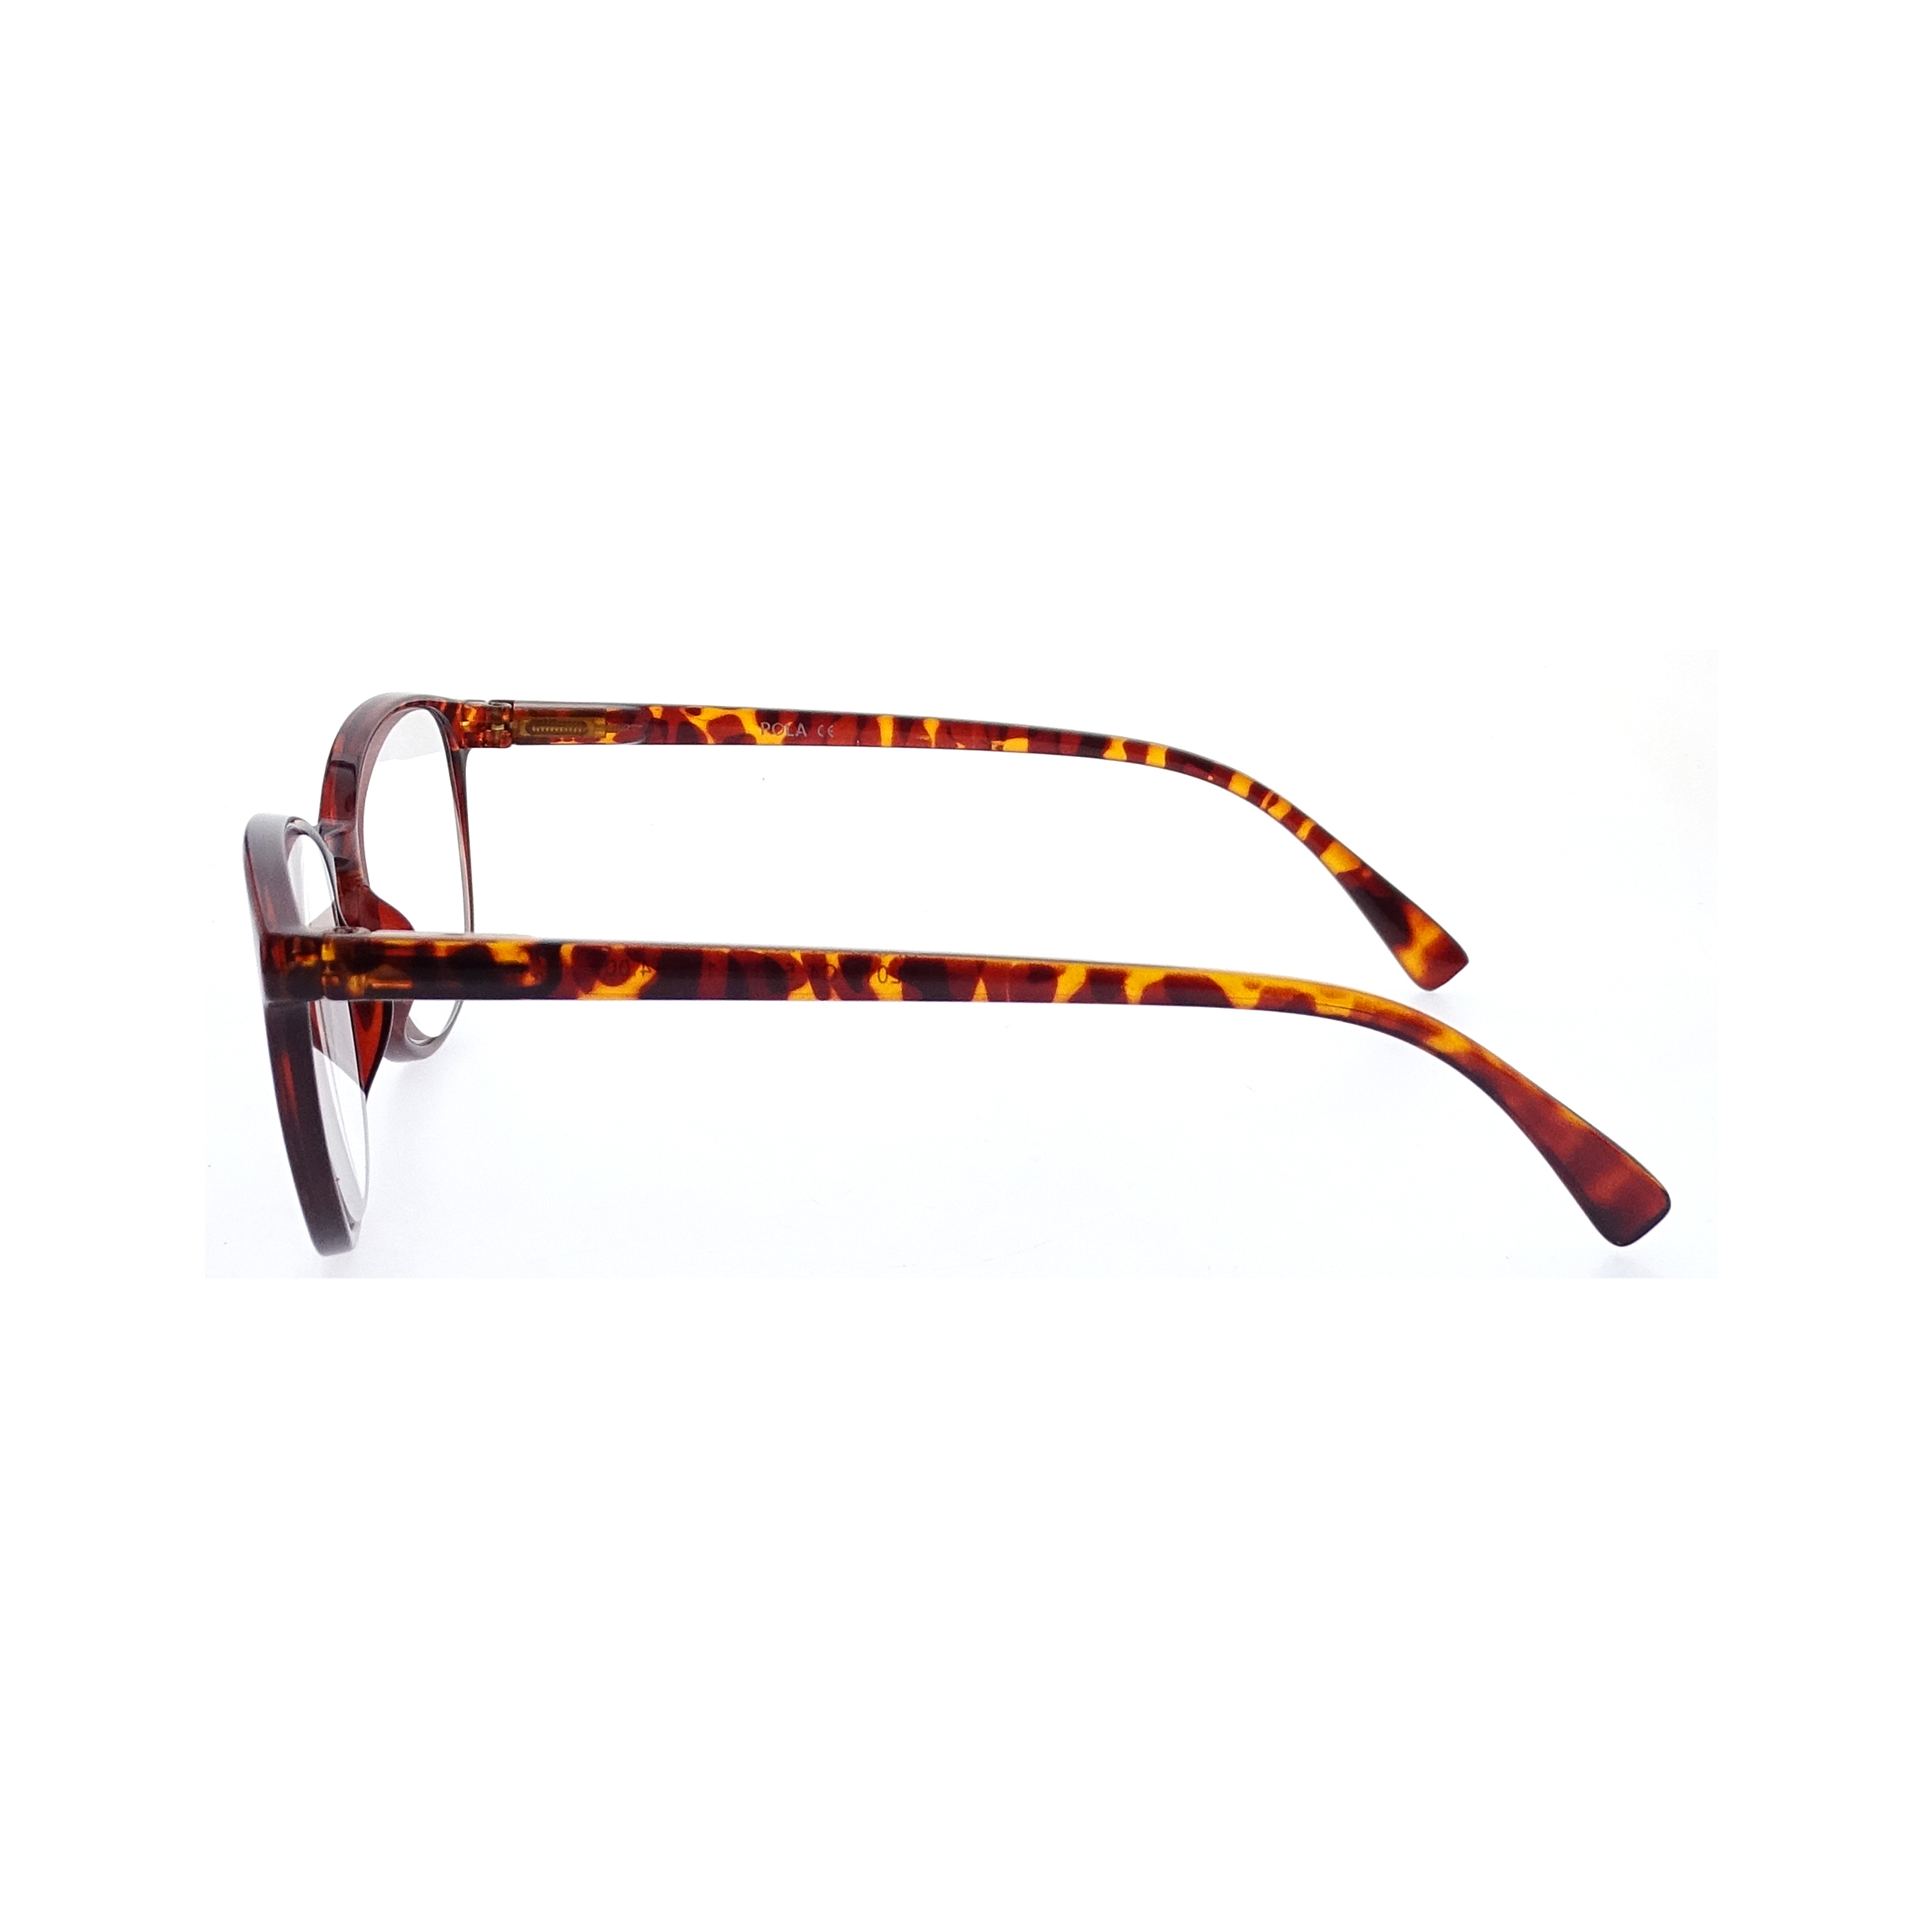 Nuevo diseño de montura óptica, gafas de moda, gafas de lectura para hombre y mujer, LR-P5817